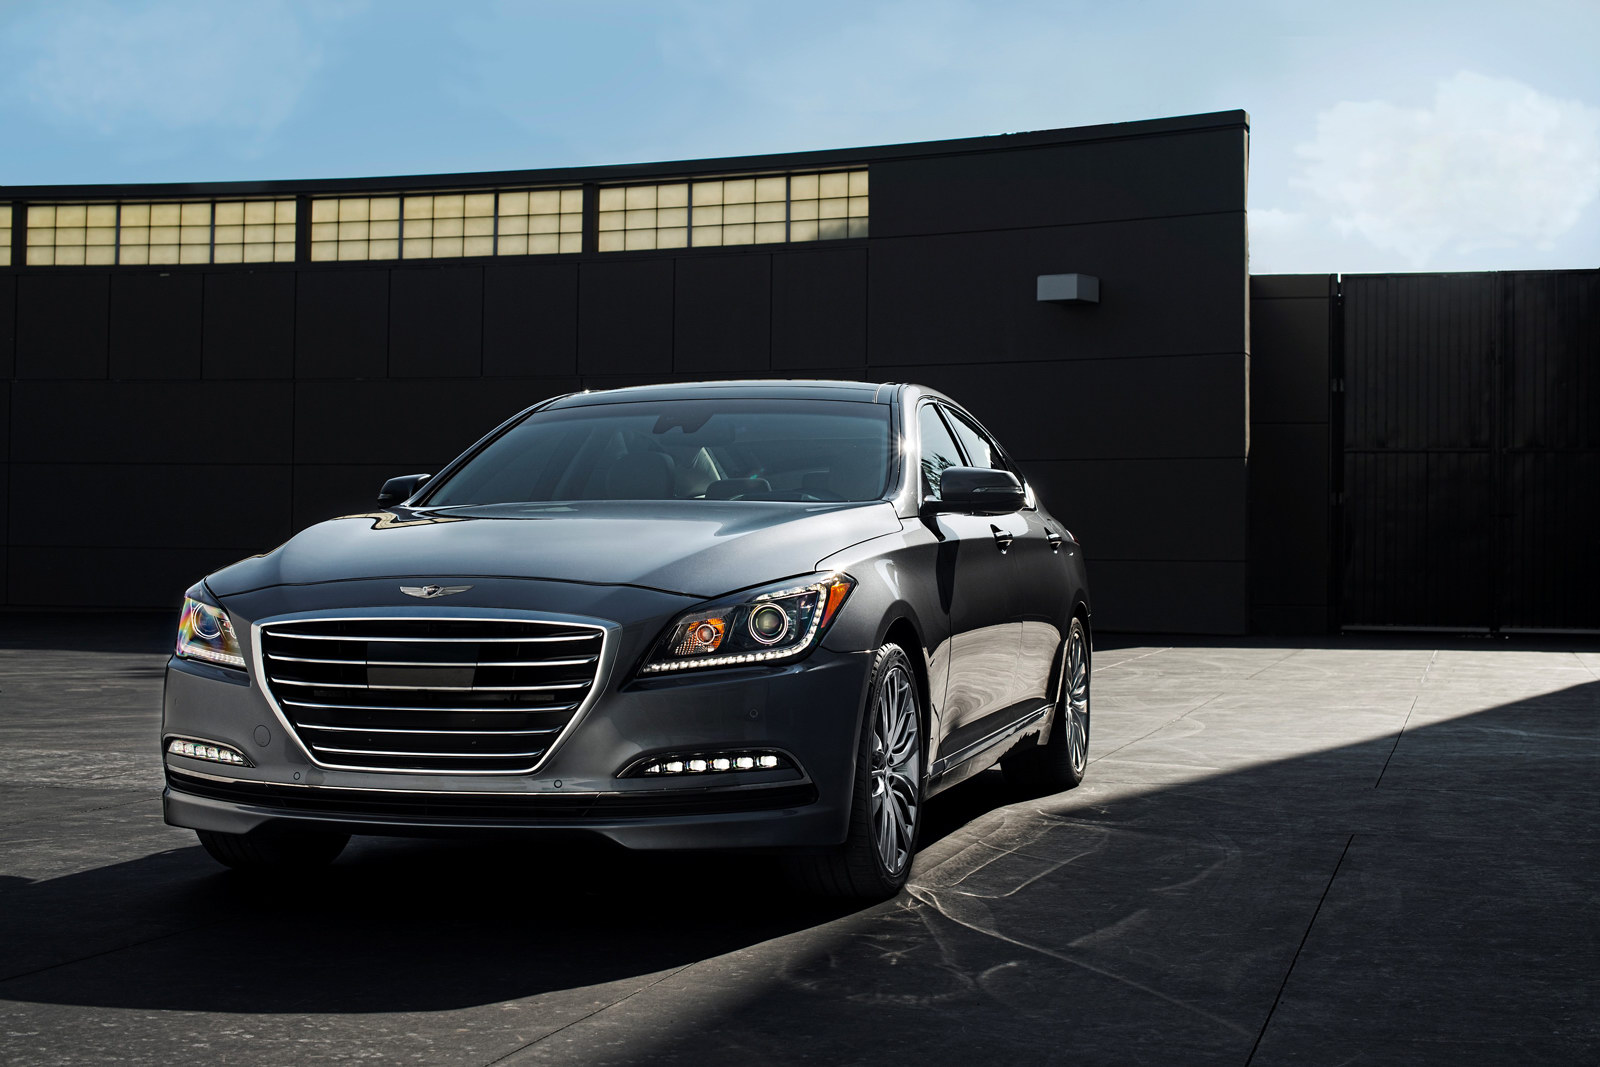 Cận cảnh Hyundai Genesis thế hệ mới tại Mỹ 1